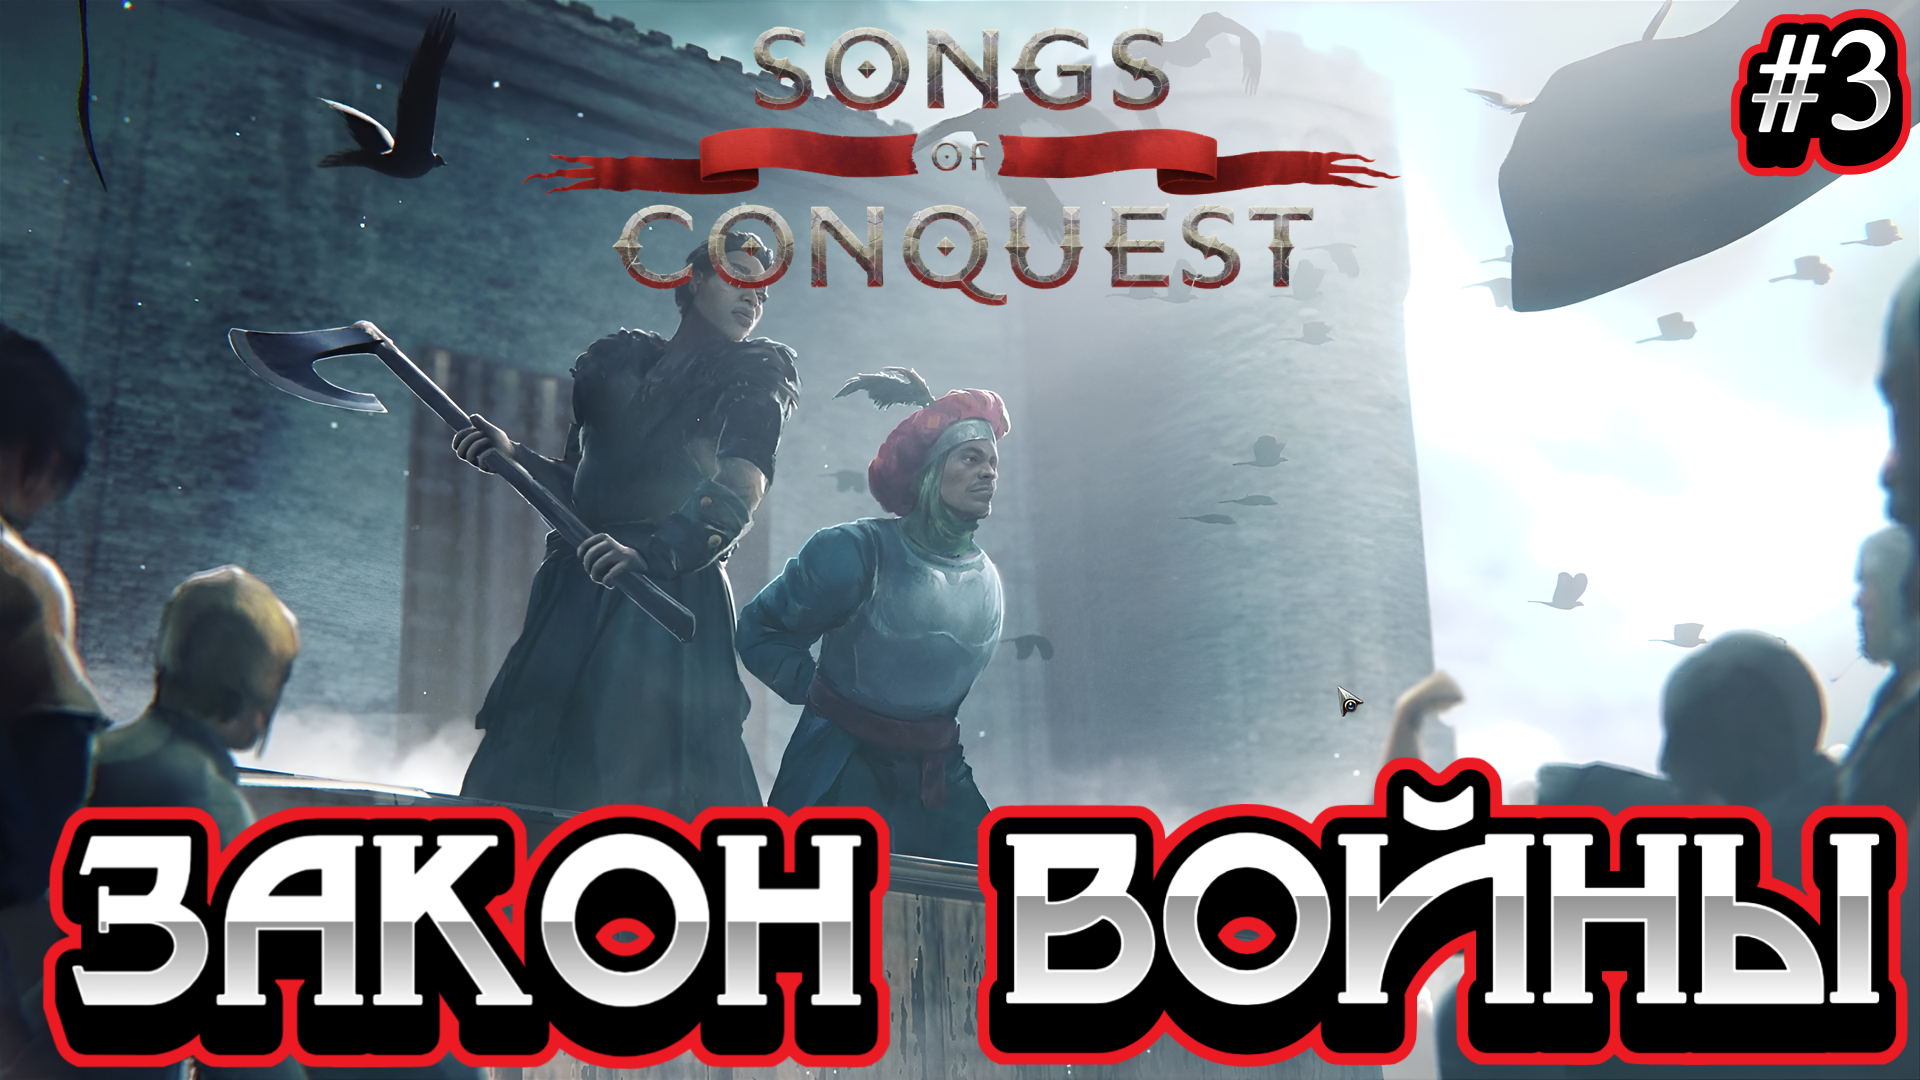 ПЕСНЬ СТУТХАРТОВ: ЗАКОН ВОЙНЫ (2 часть) - #3 Songs of Conquest Прохождение на Русском